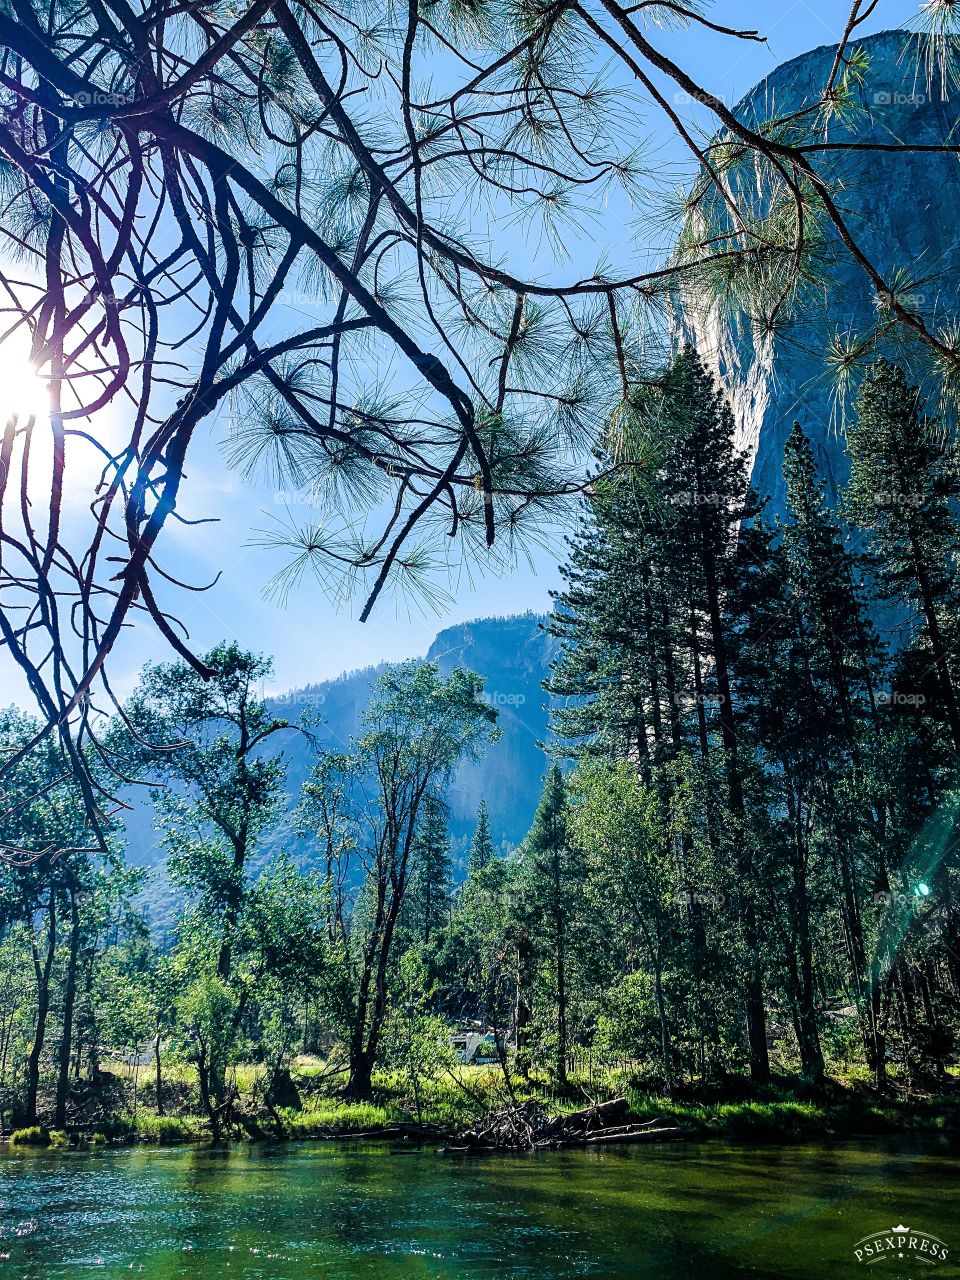 Taken at Yosemite